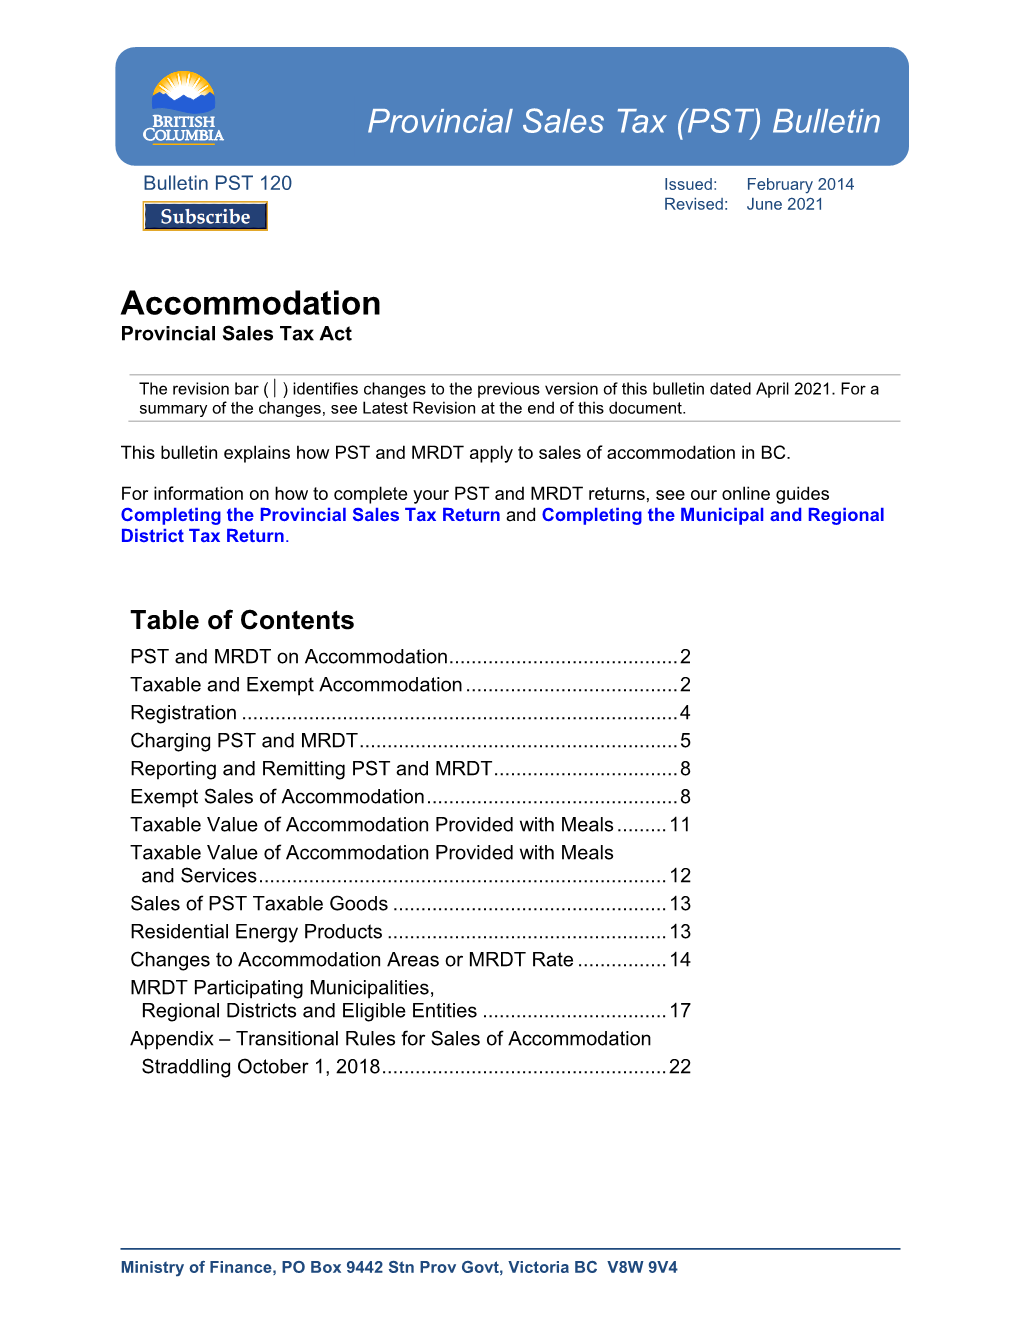 Bulletin PST 120 Issued: February 2014 Revised: June 2021